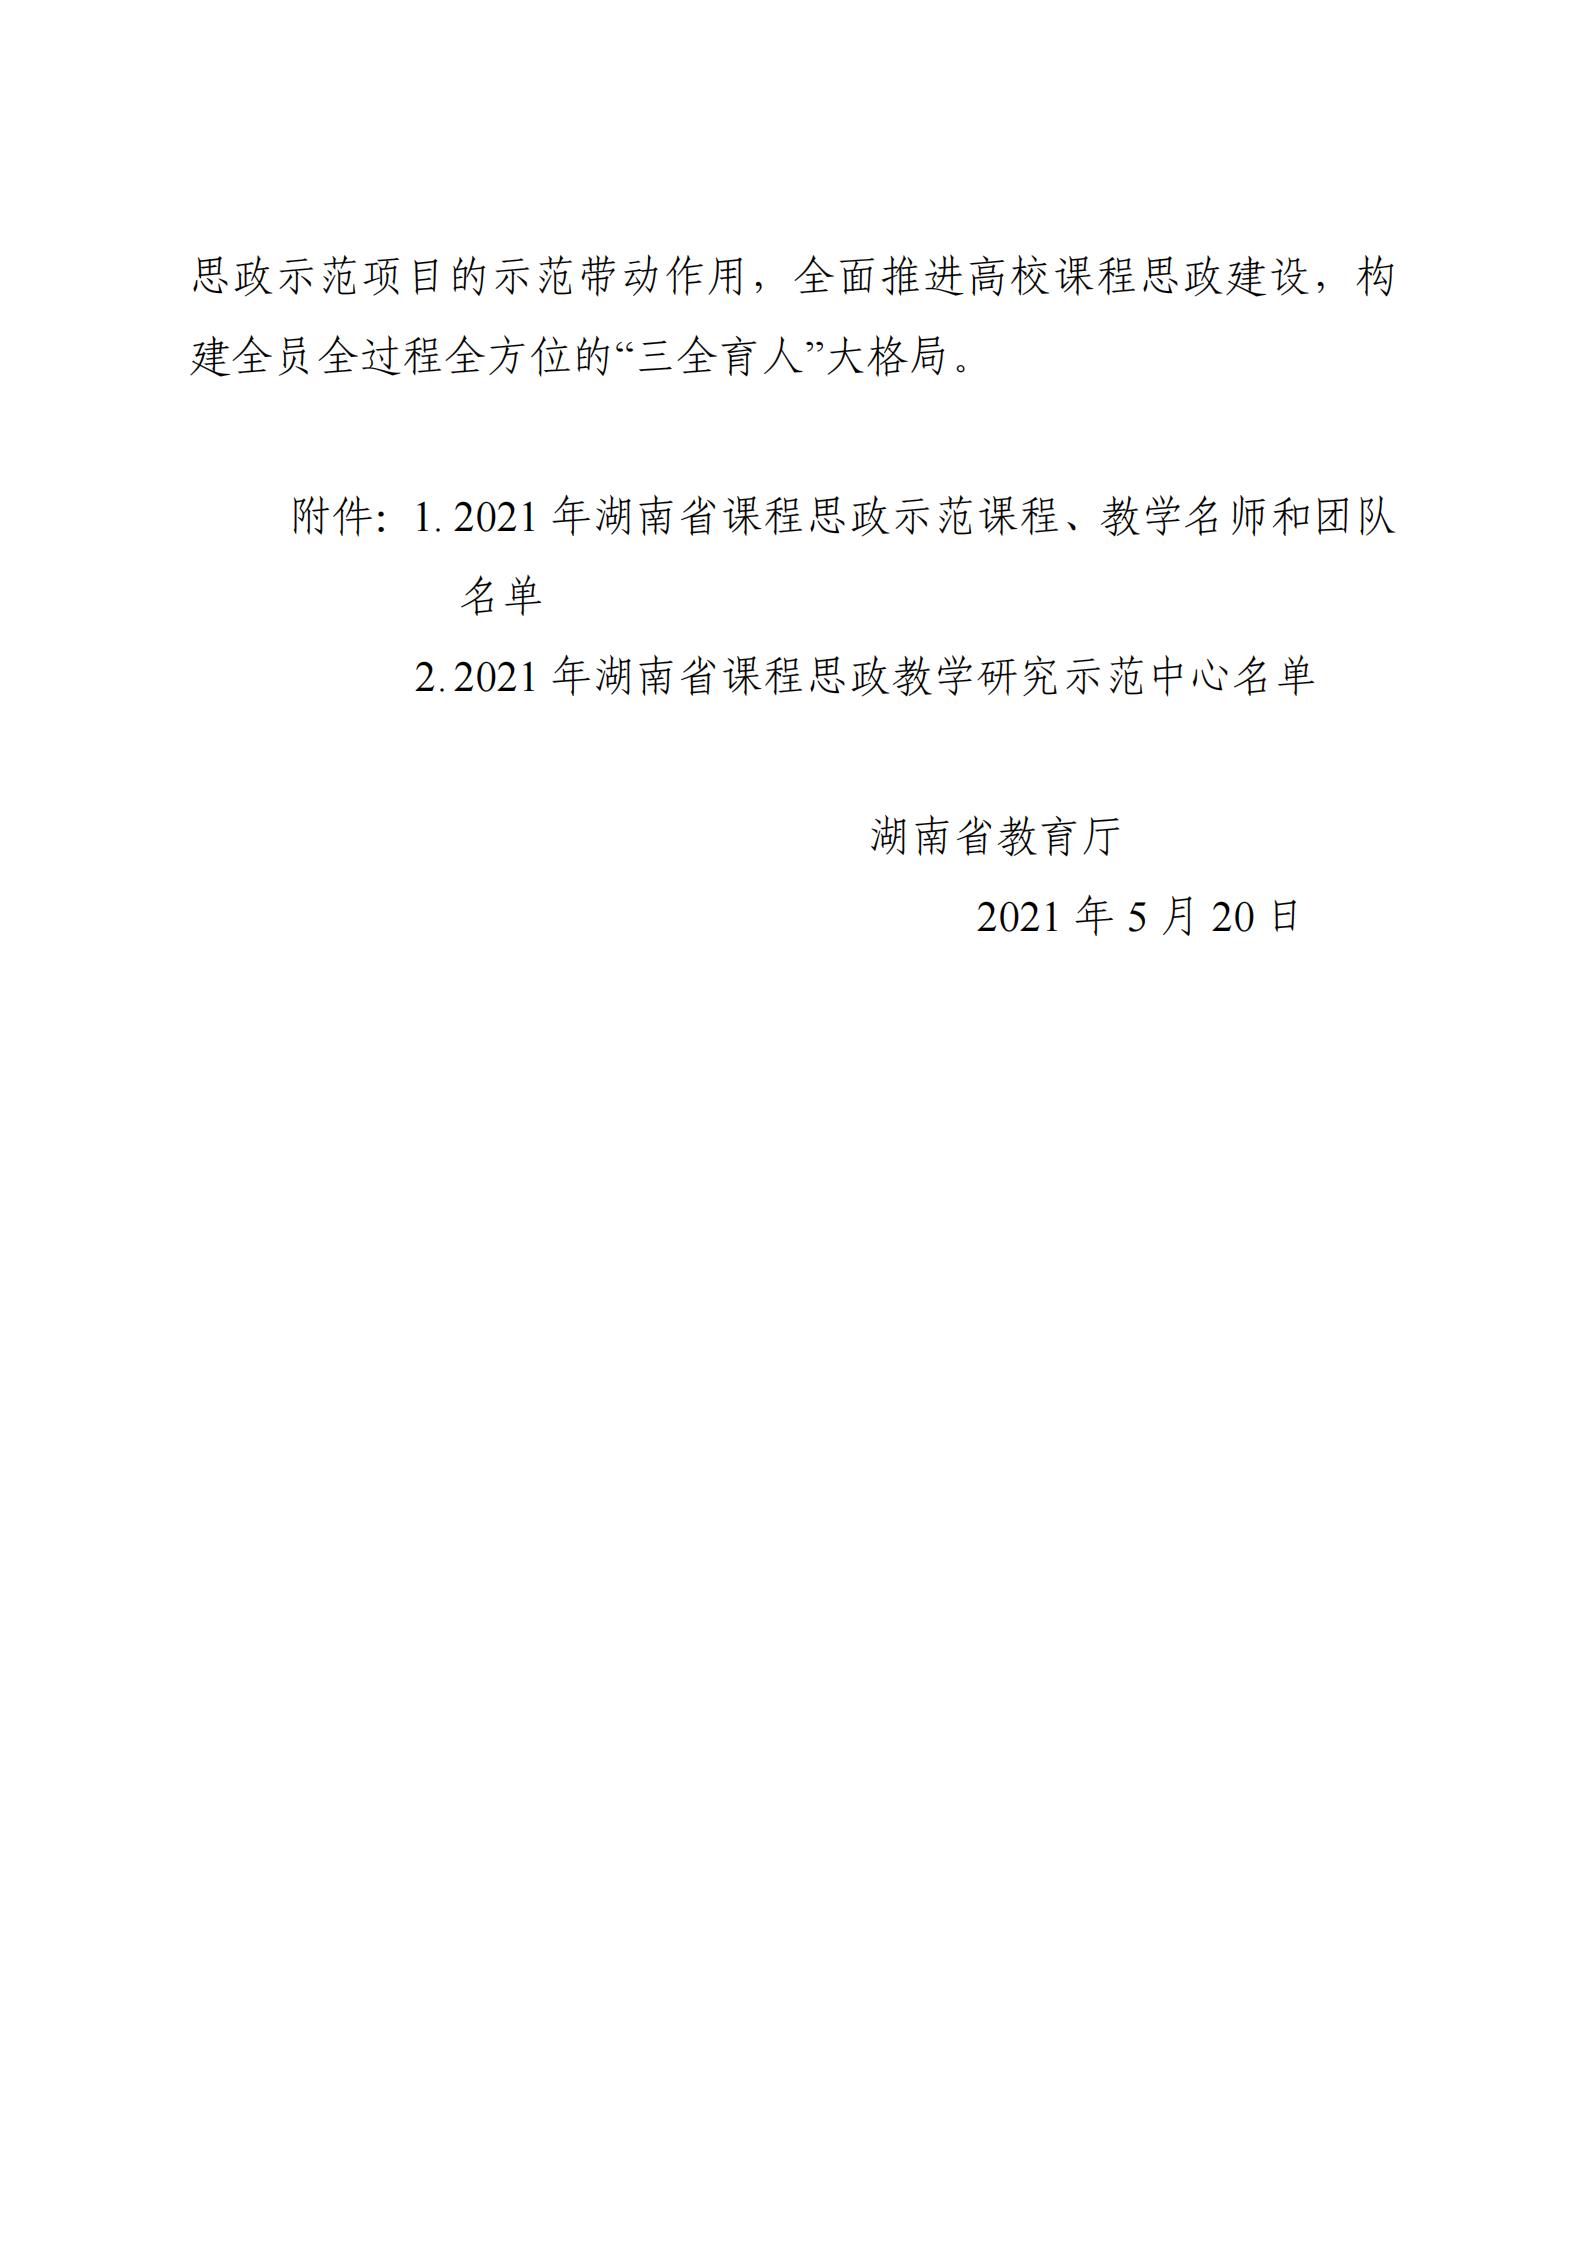 关于公布2021年湖南省课程思政示范项目名单的通知_01.jpg